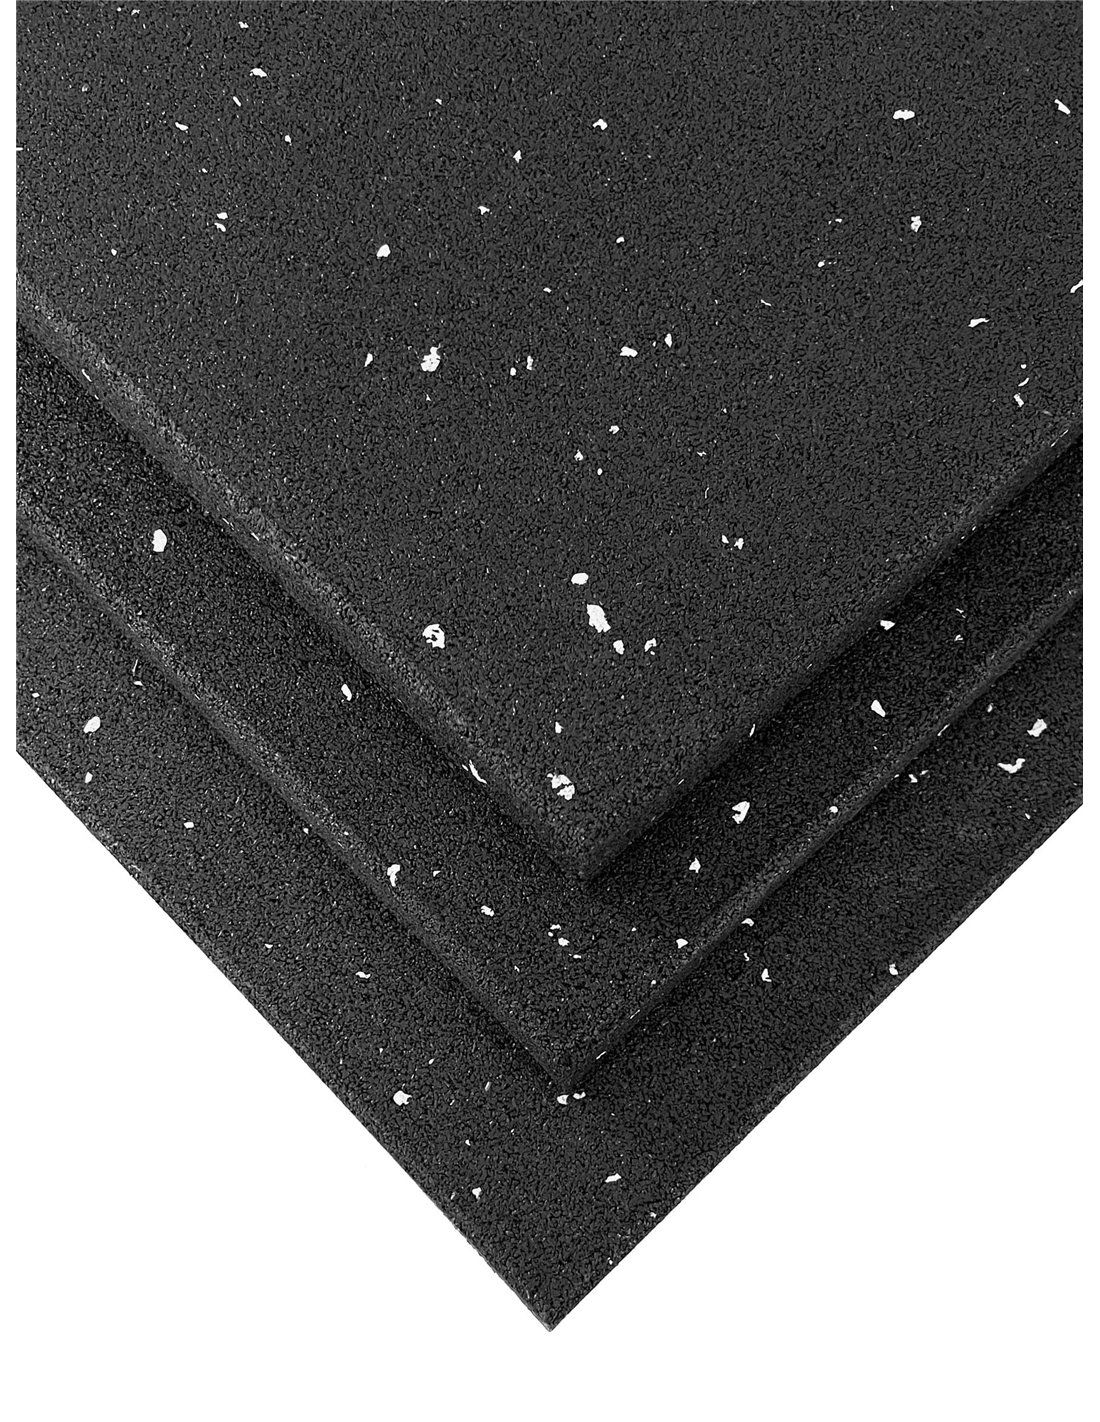 Losetas de caucho para gimnasio negra, 50 x 50 x 4 cm suelos